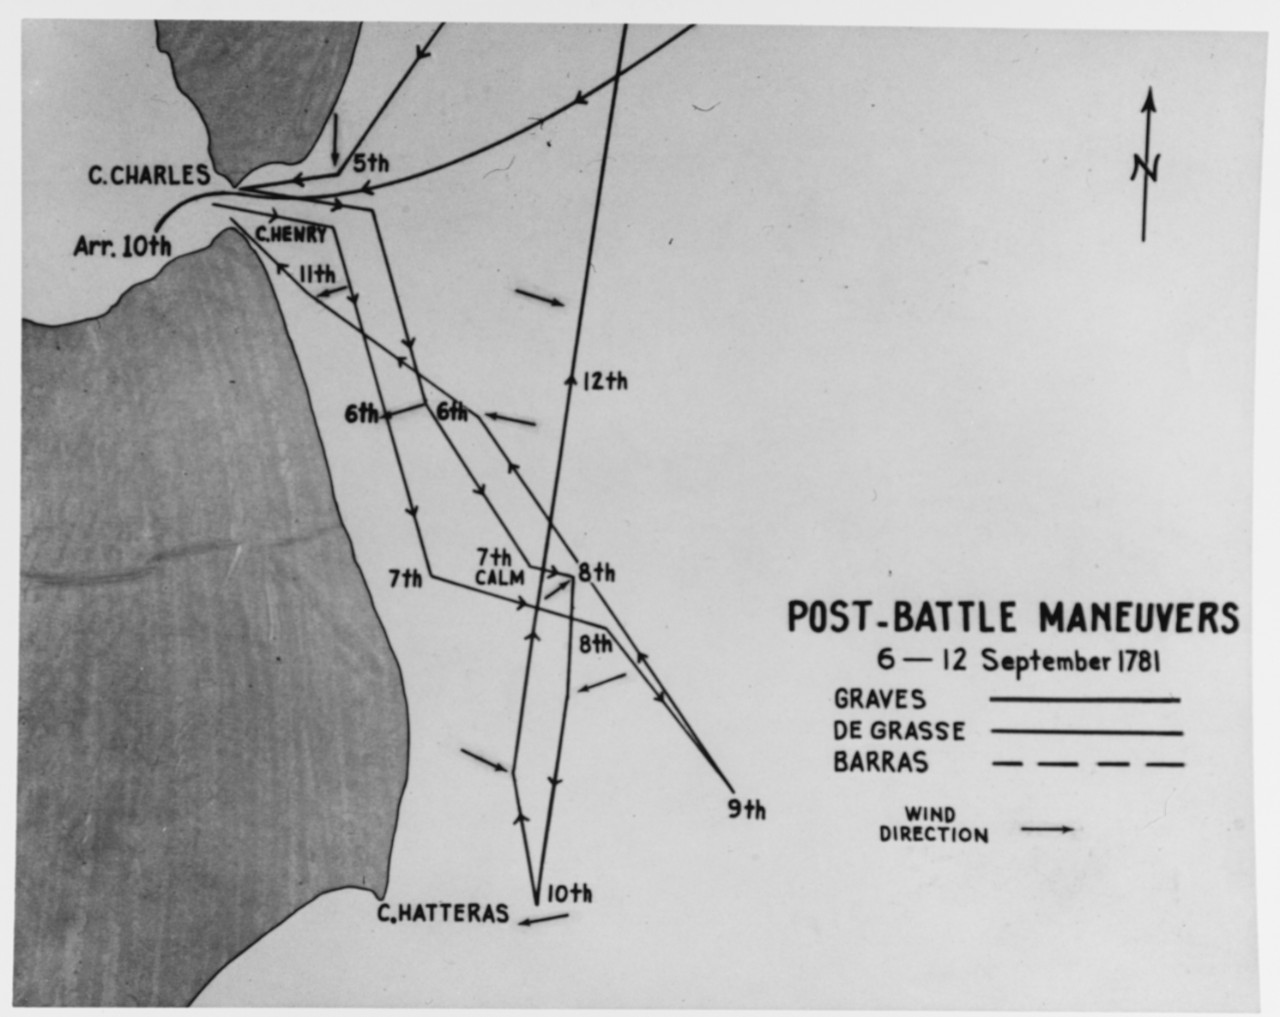 Post Battle Maneuvers, 6-12 September 1781